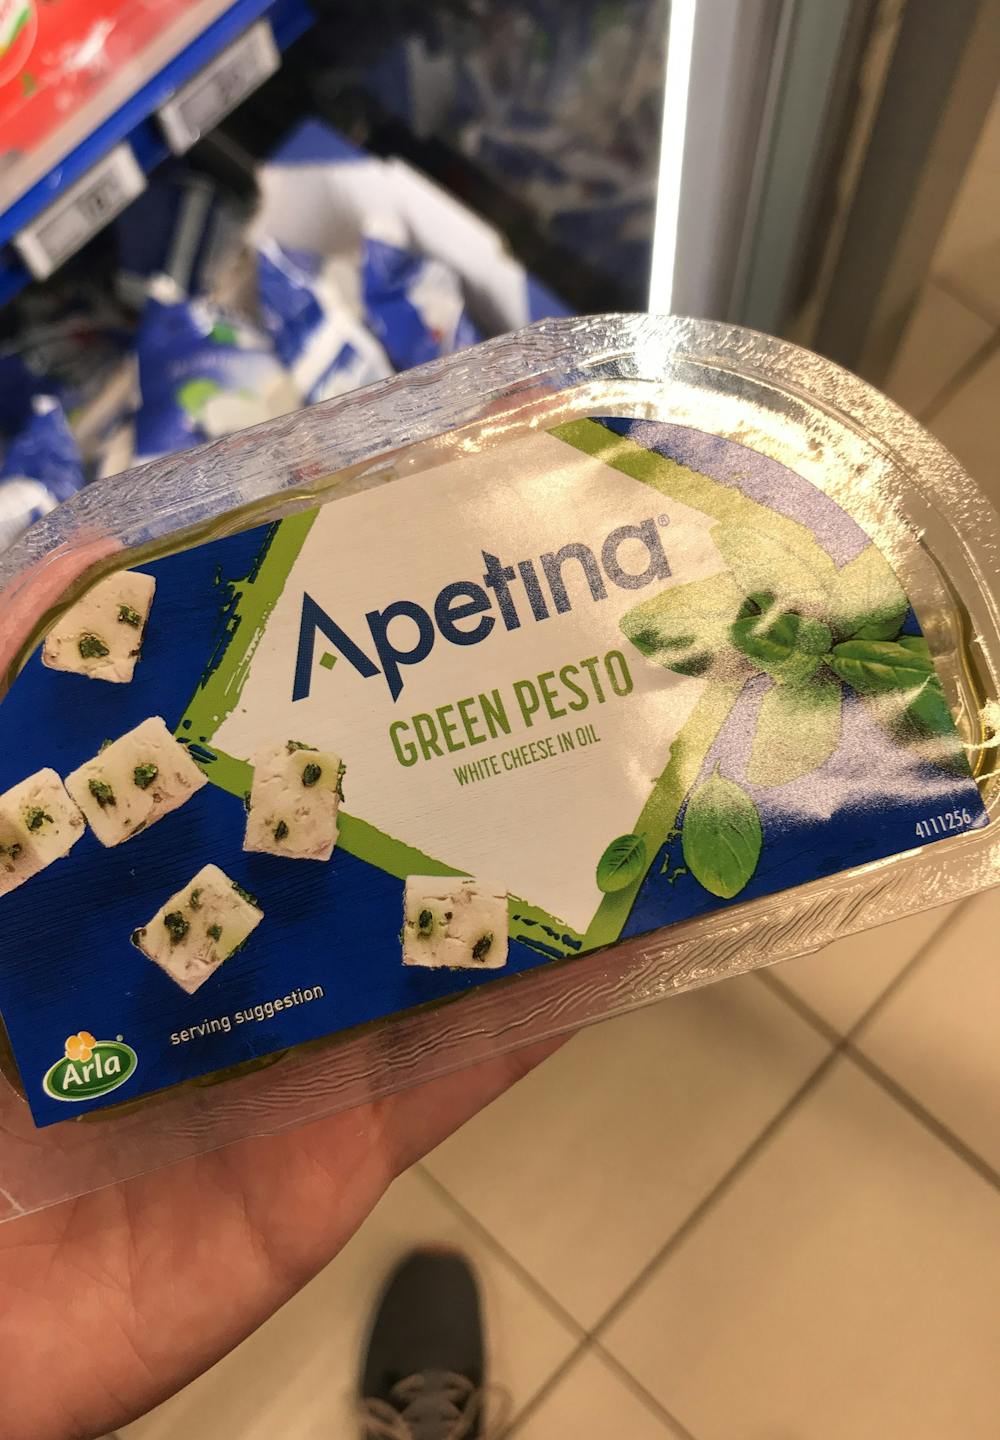 White cheese in ol green pesto , Apetina 